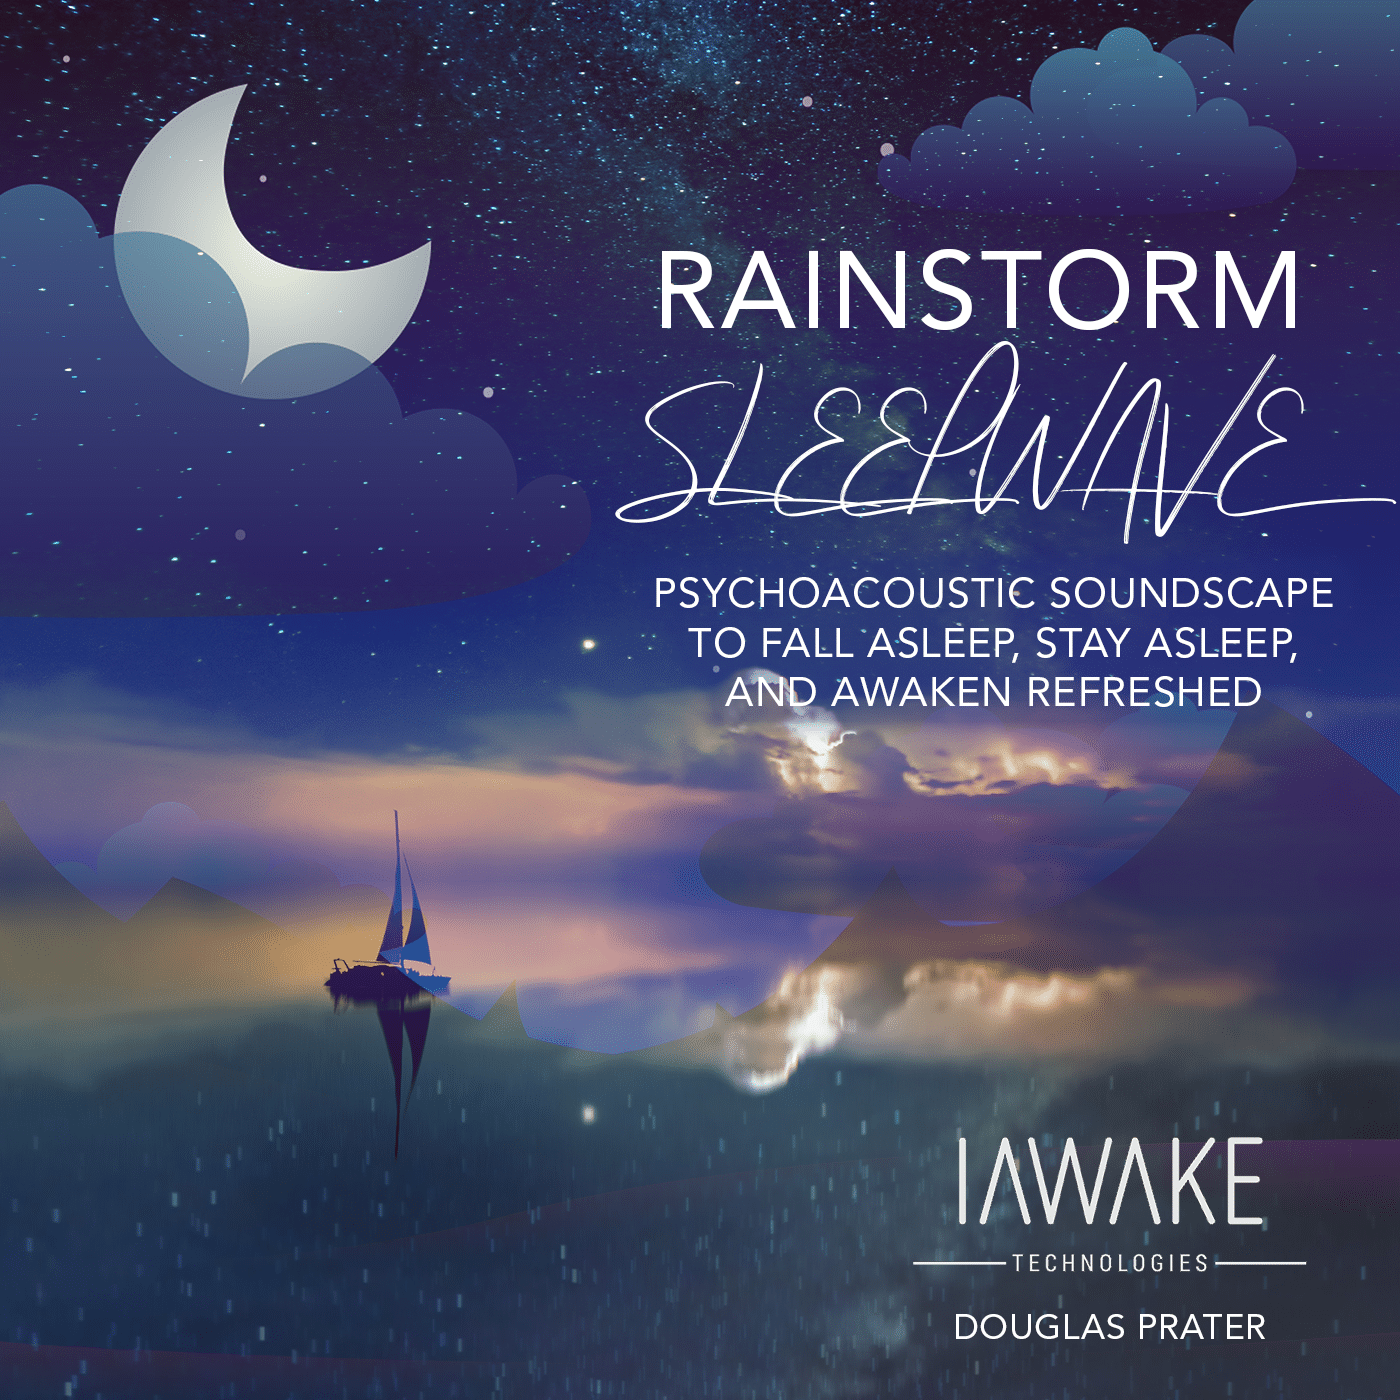 iTunes_RainstormSleepwave-1400x1400